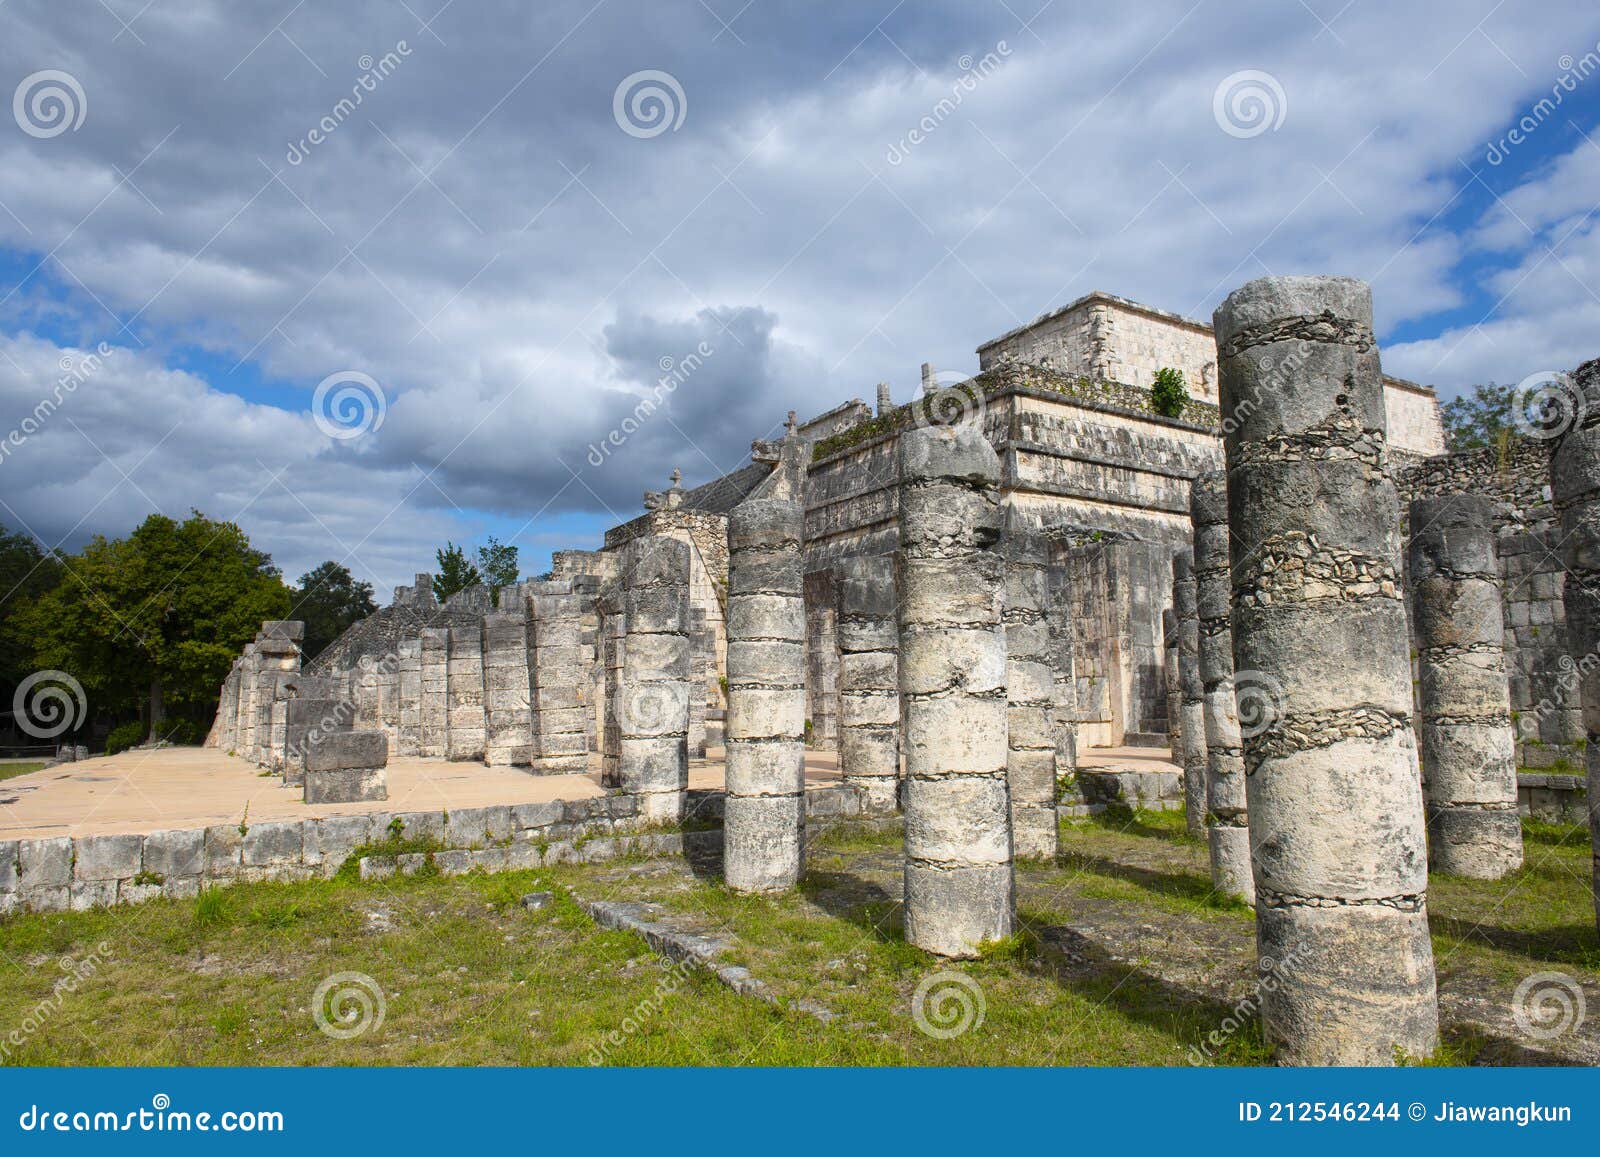 chichen itza archaeological site, yucatan, mexico